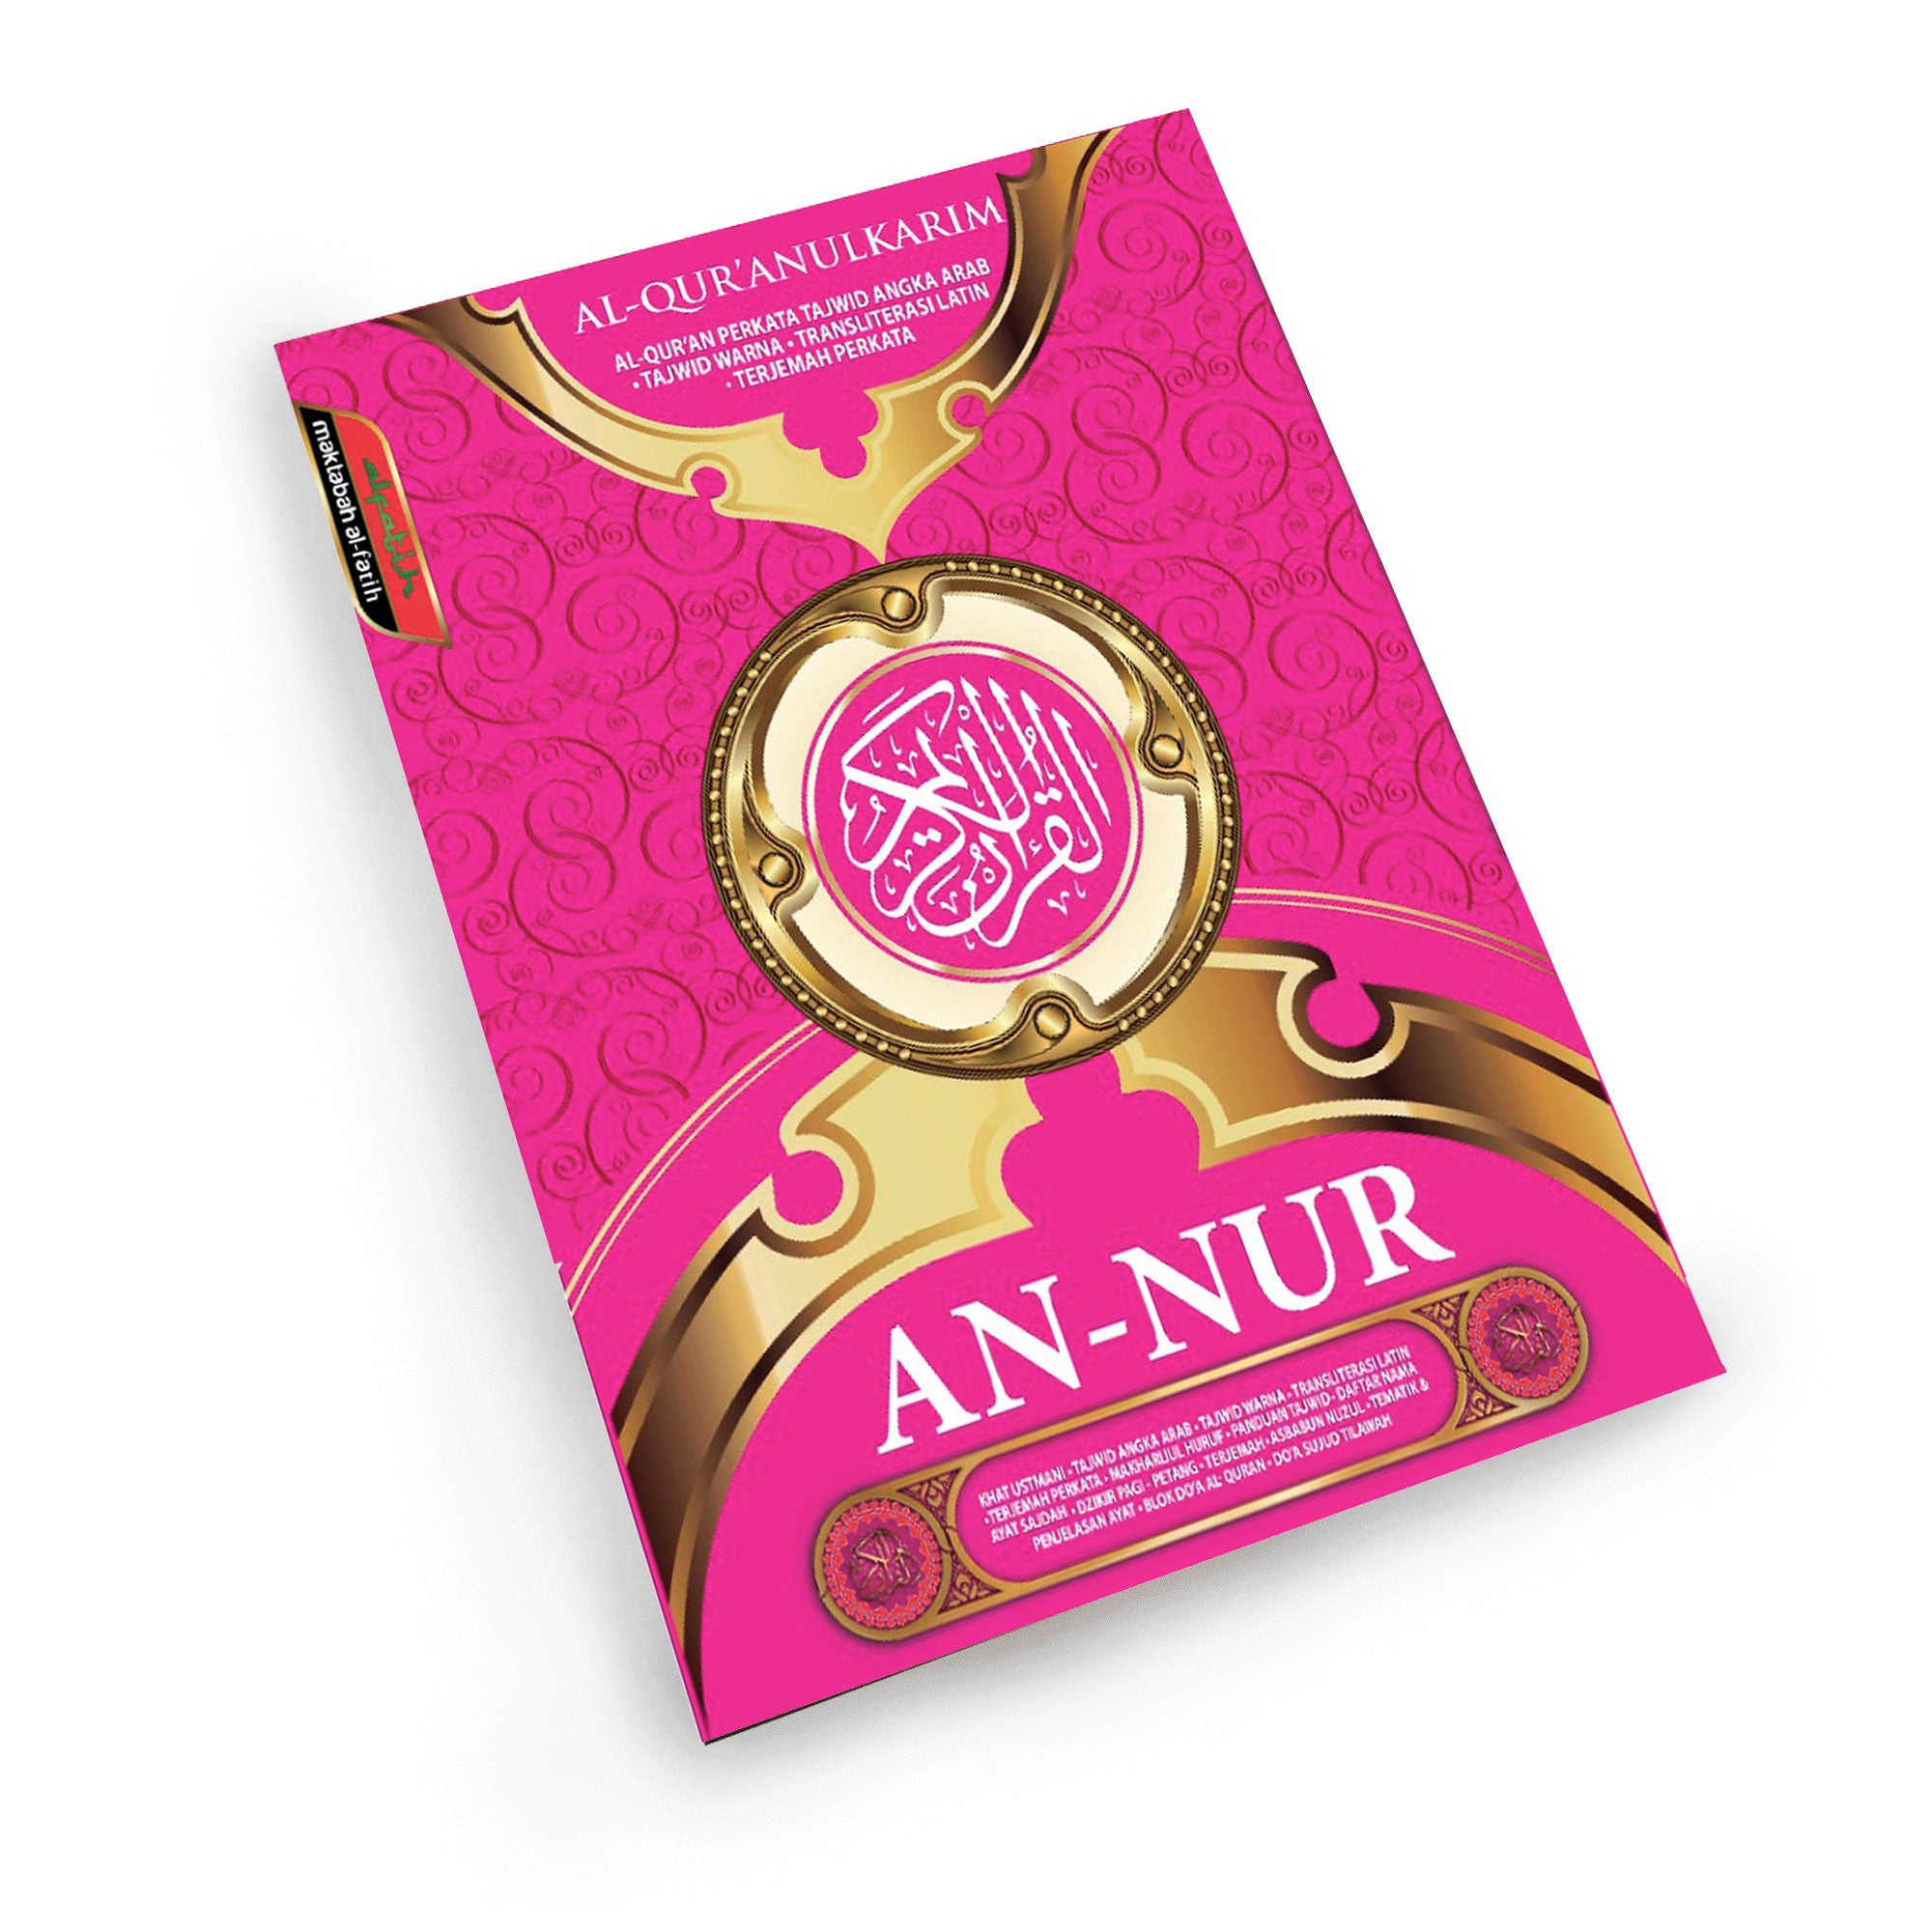 Al-Quran An-Nur (ローマ字表記) - A4 サイズ ピンク